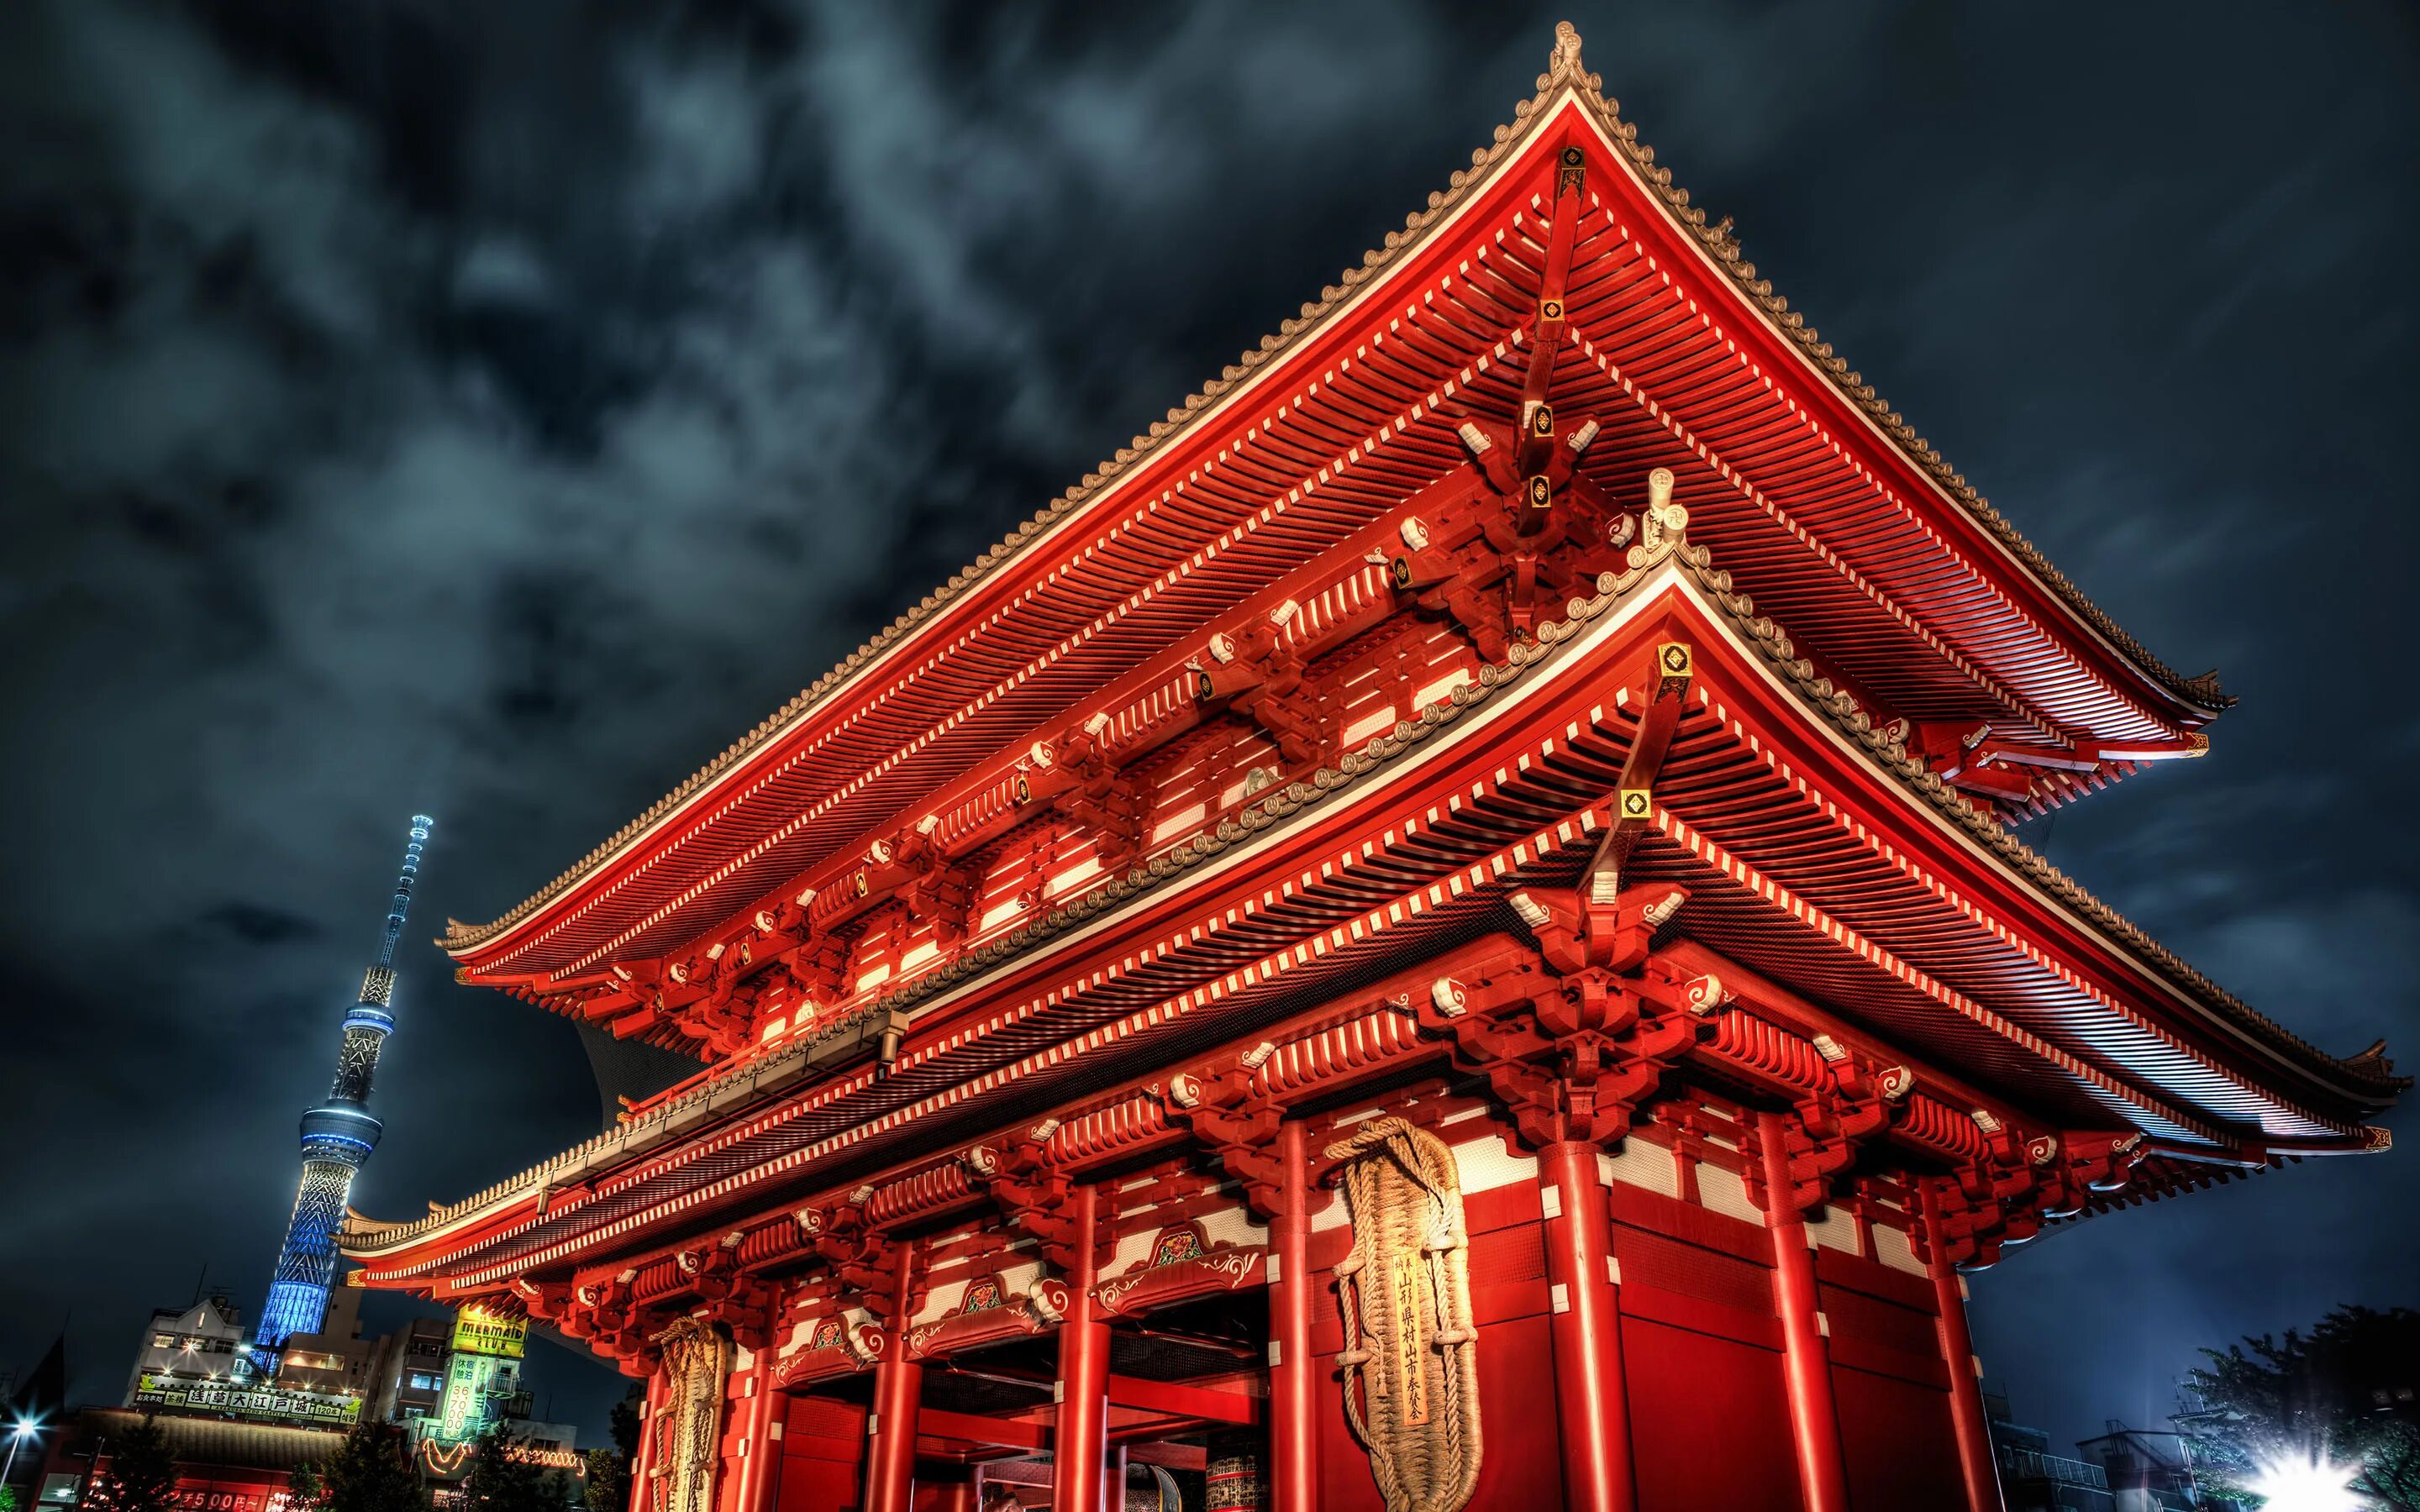 Asia building. Японская архитектура Токио. Красный храм в Токио. Храм Камейдо Токио.